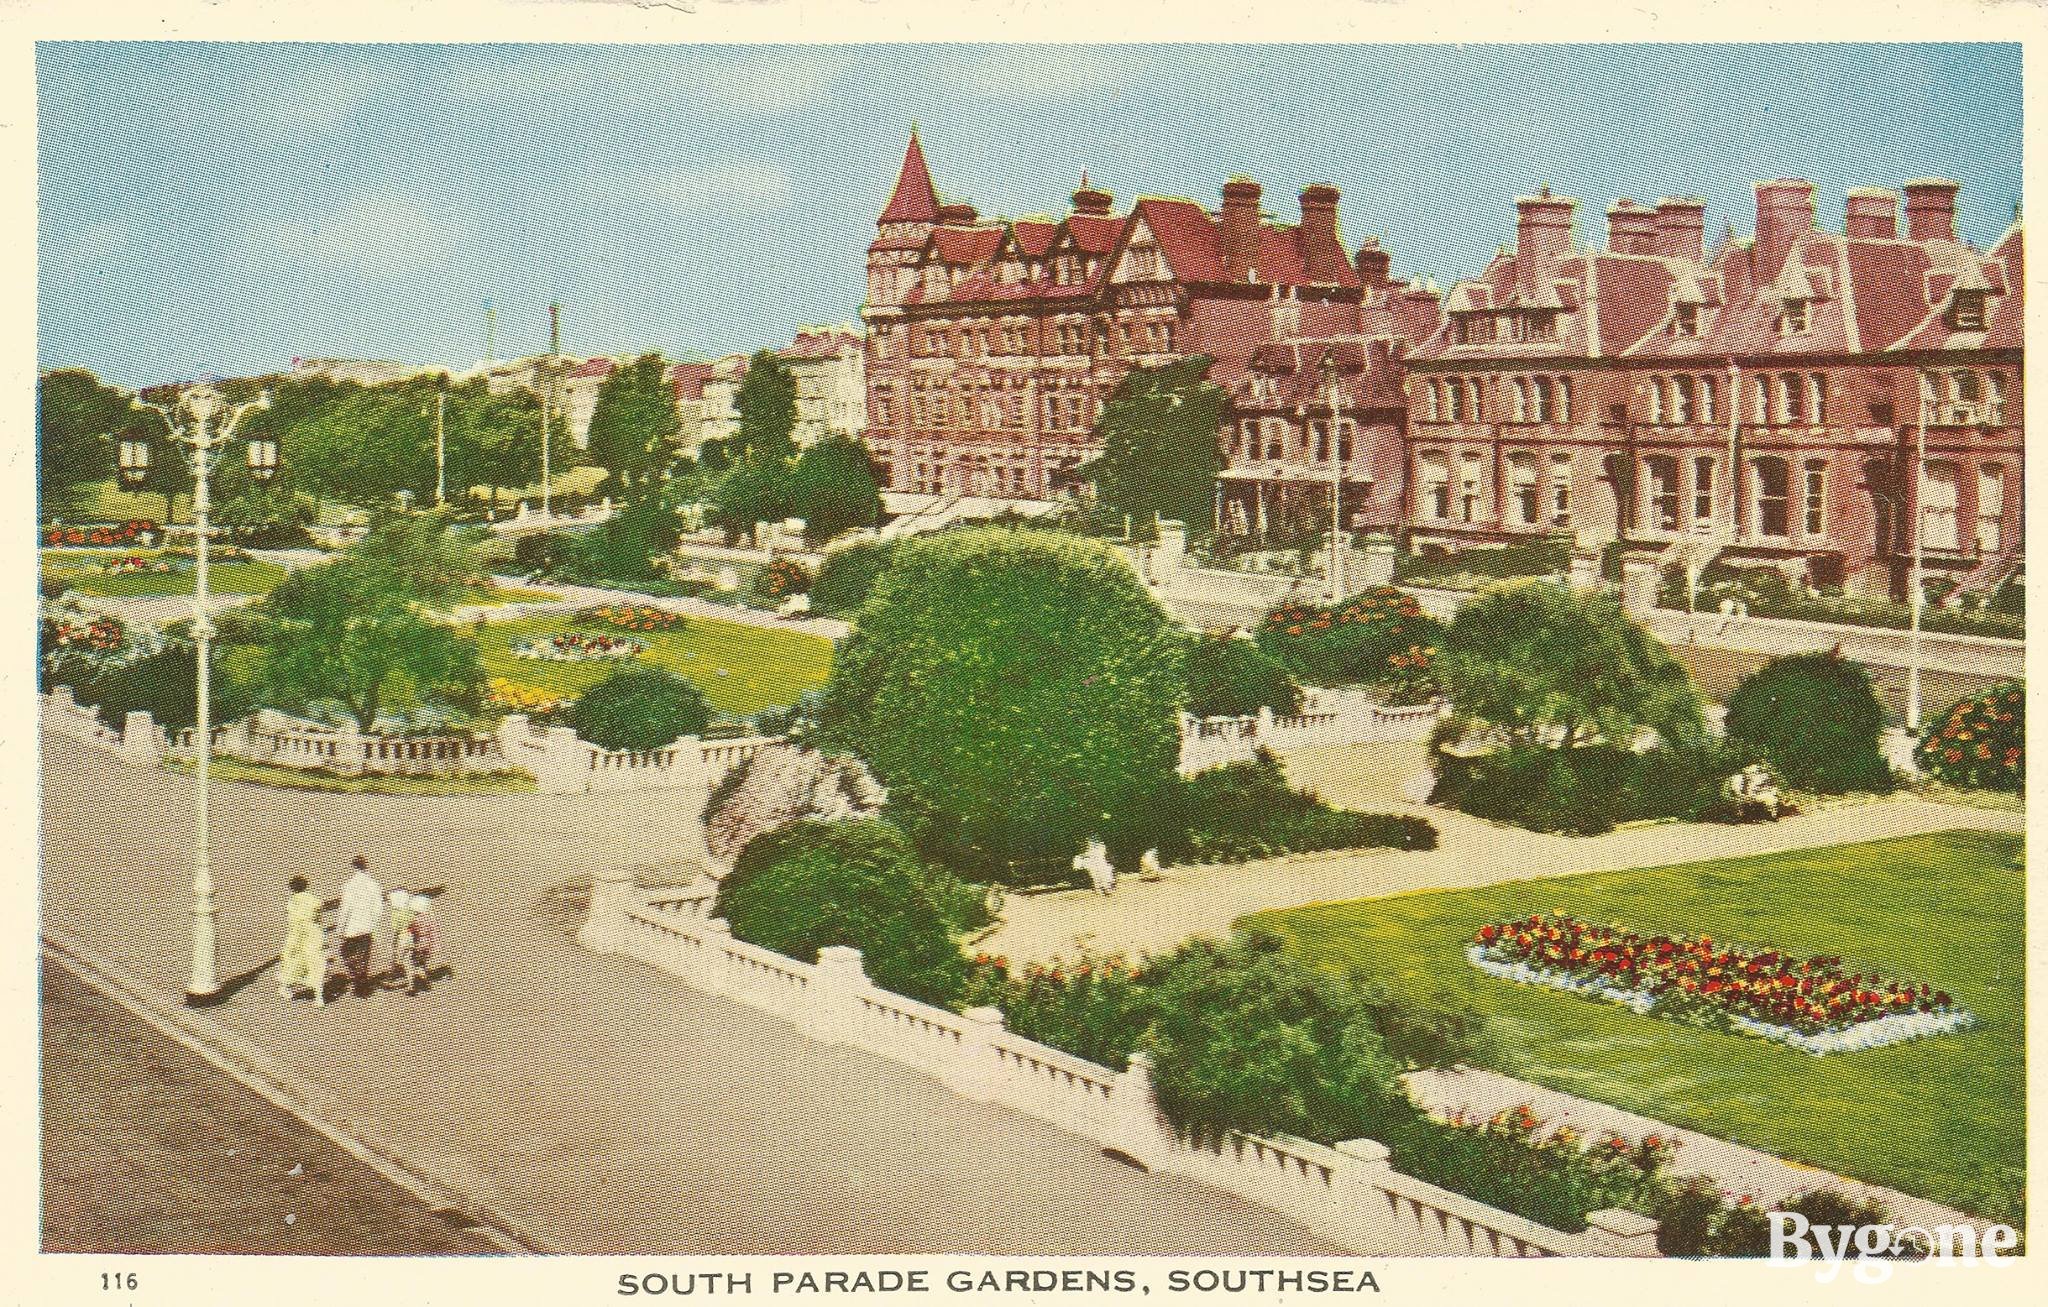 South Parade Gardens